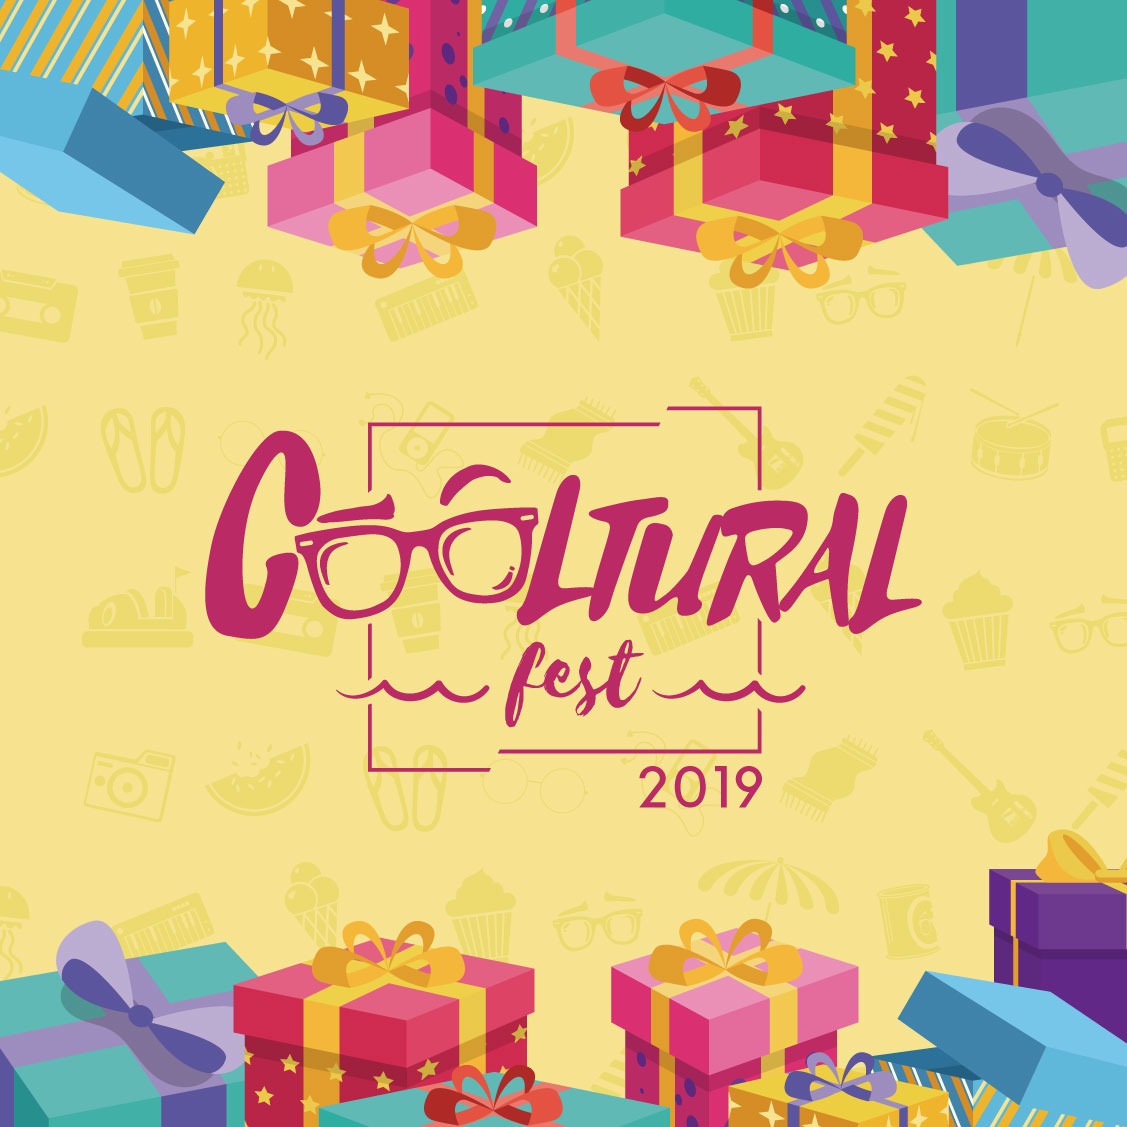 cooltural fest 2019 regalo reyes